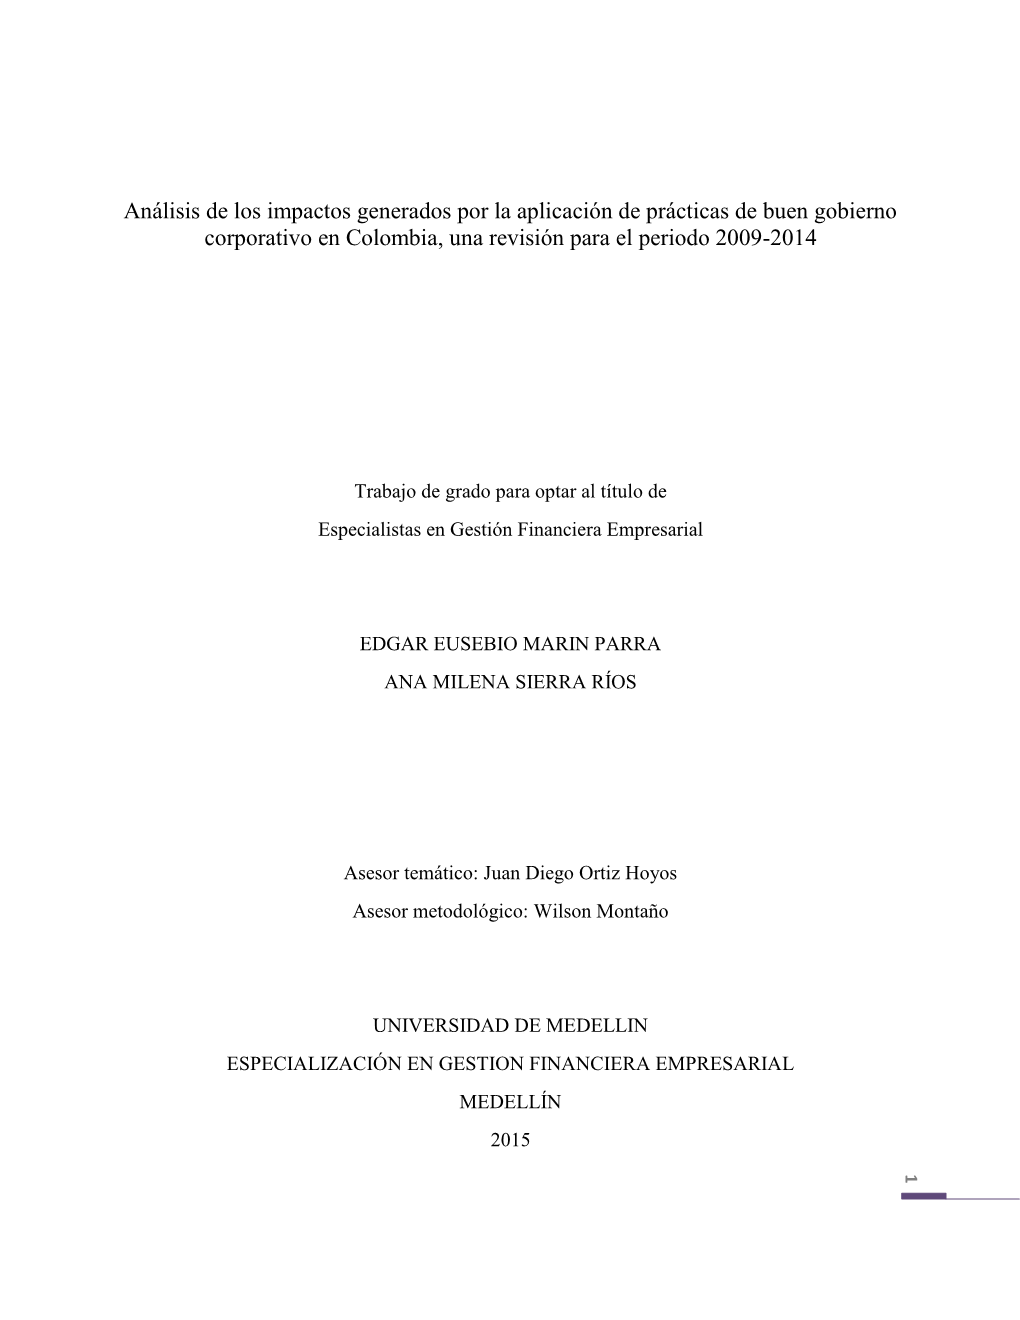 Análisis De Los Impactos Generados Por La Aplicación De Prácticas De Buen Gobierno Corporativo En Colombia, Una Revisión Para El Periodo 2009-2014